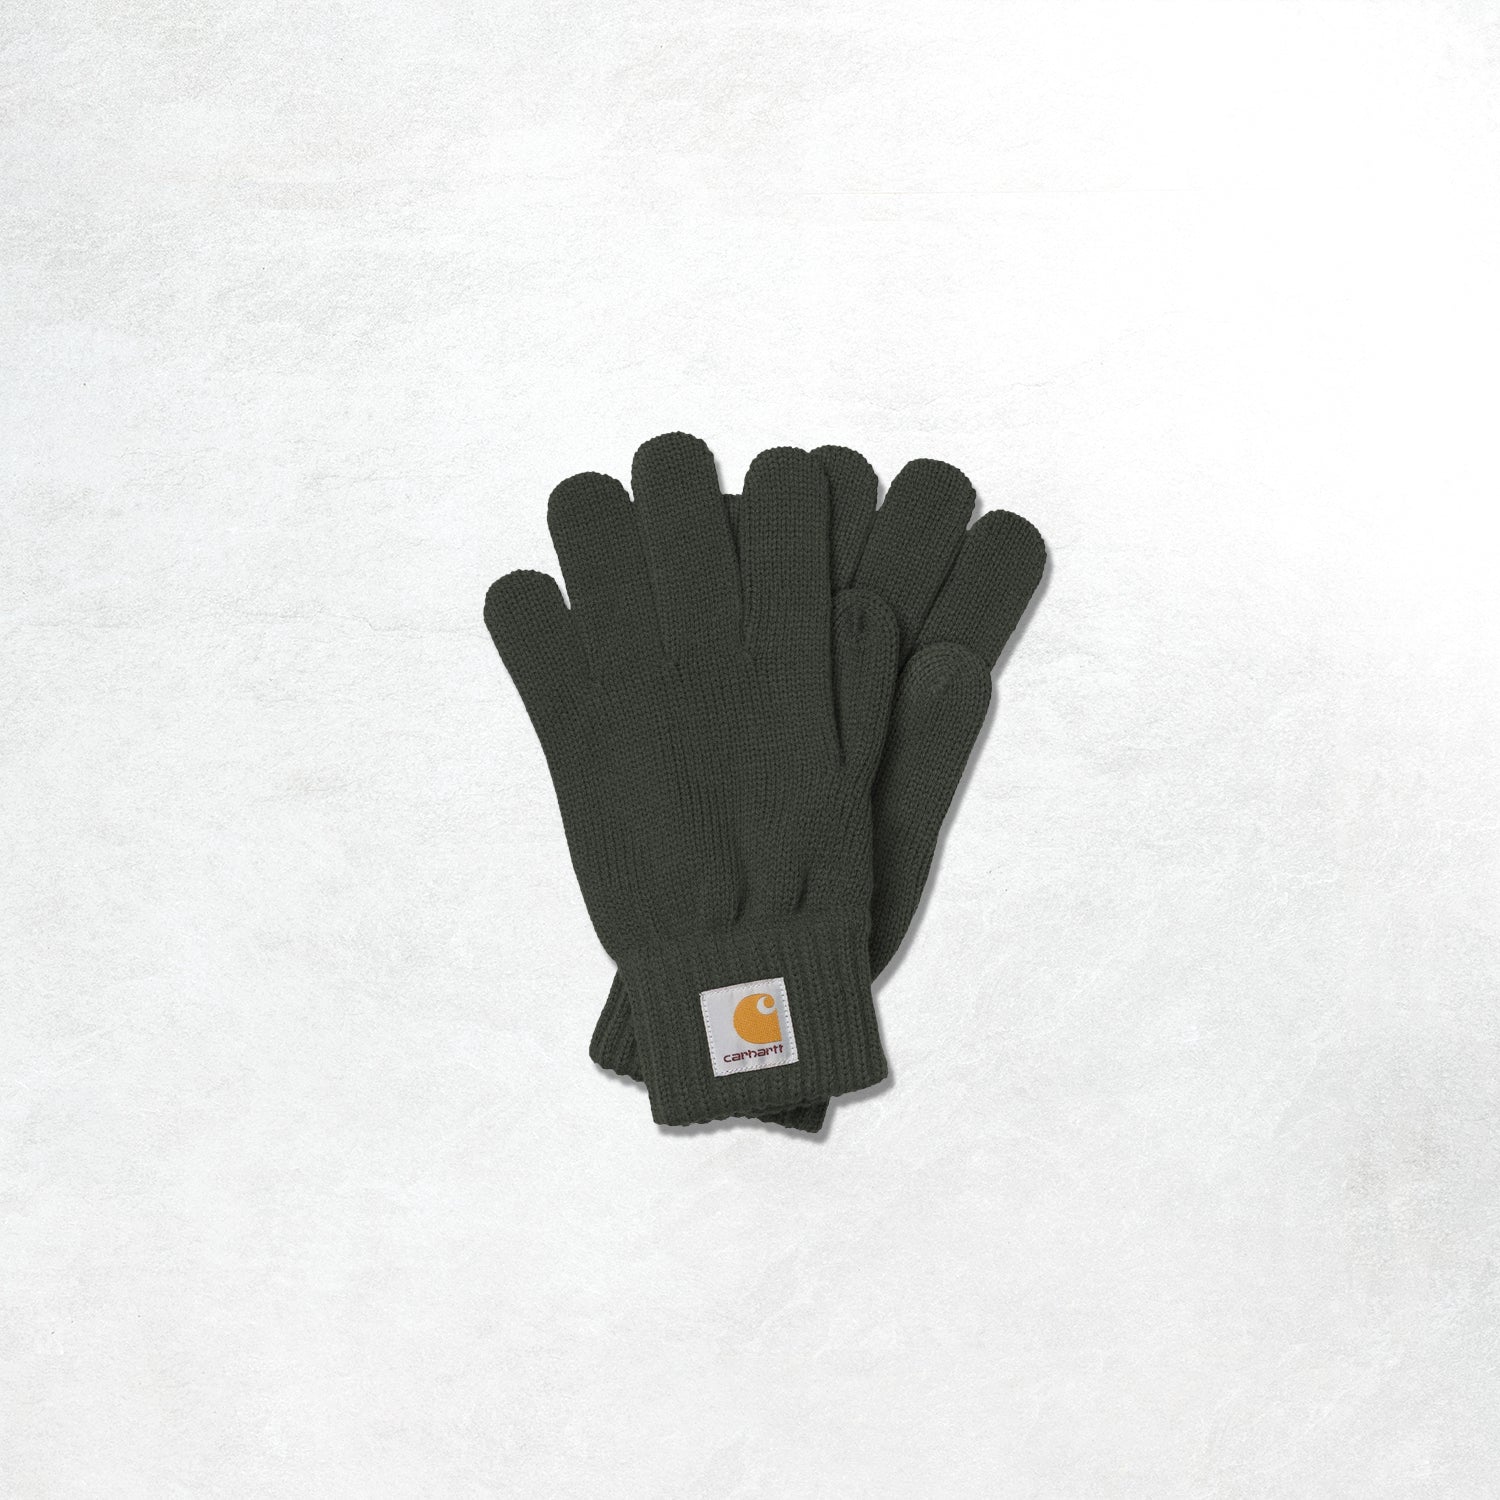 Carhatt Watch Gloves: Blacksmith